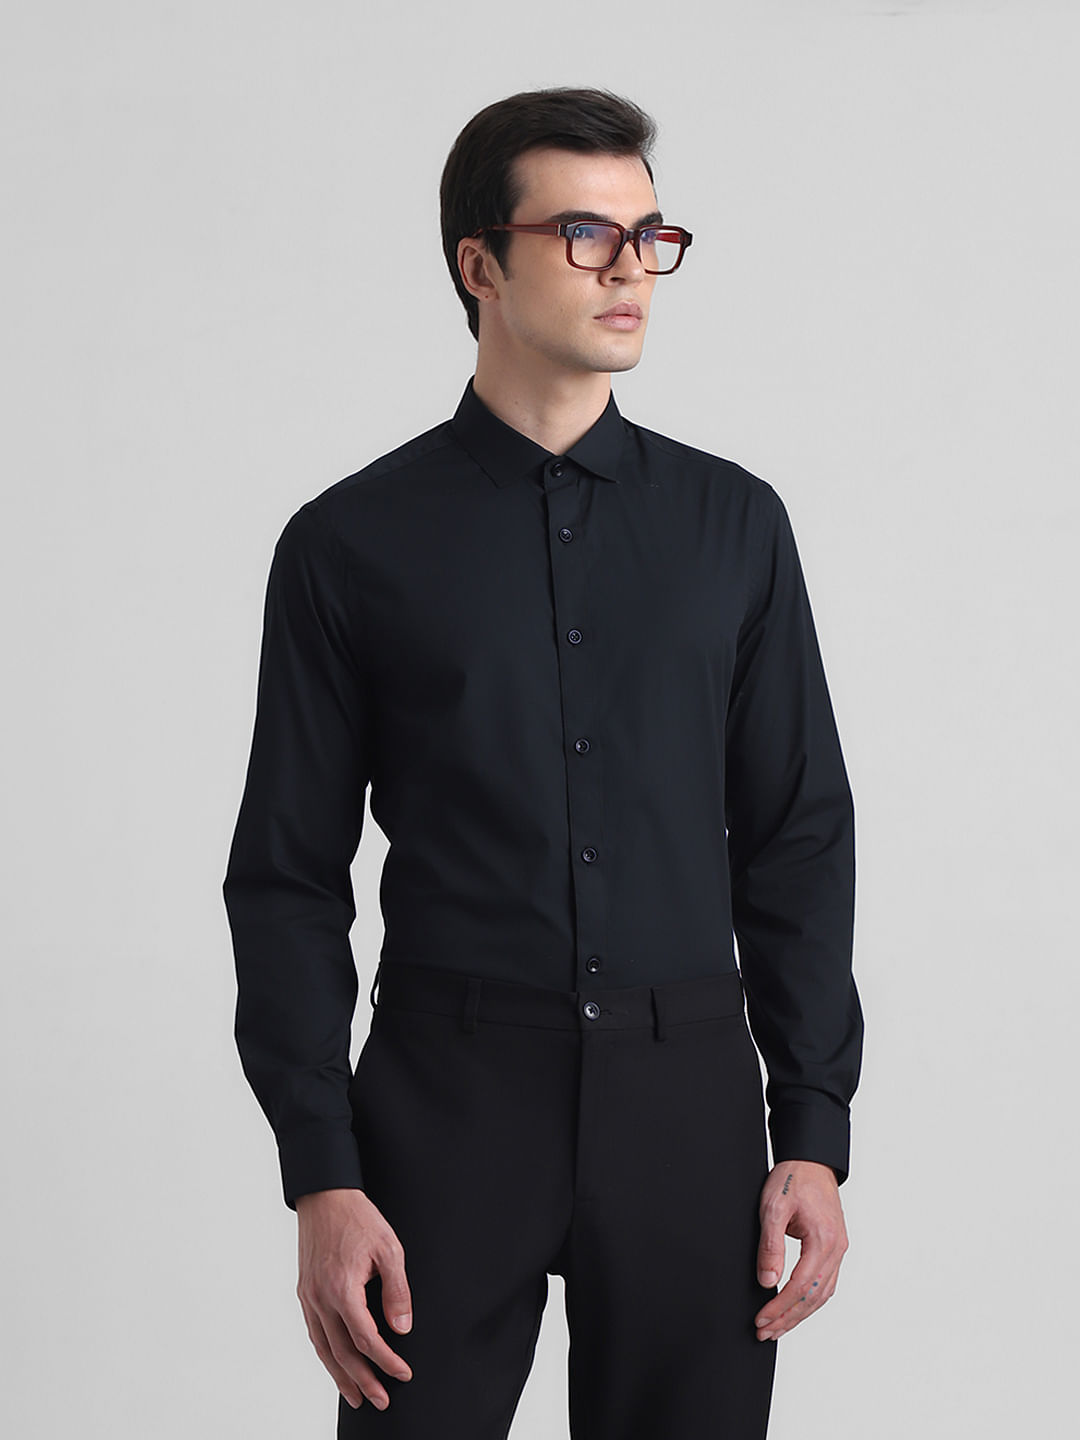 Best Black Shirt Combination Pant Ideas For Men